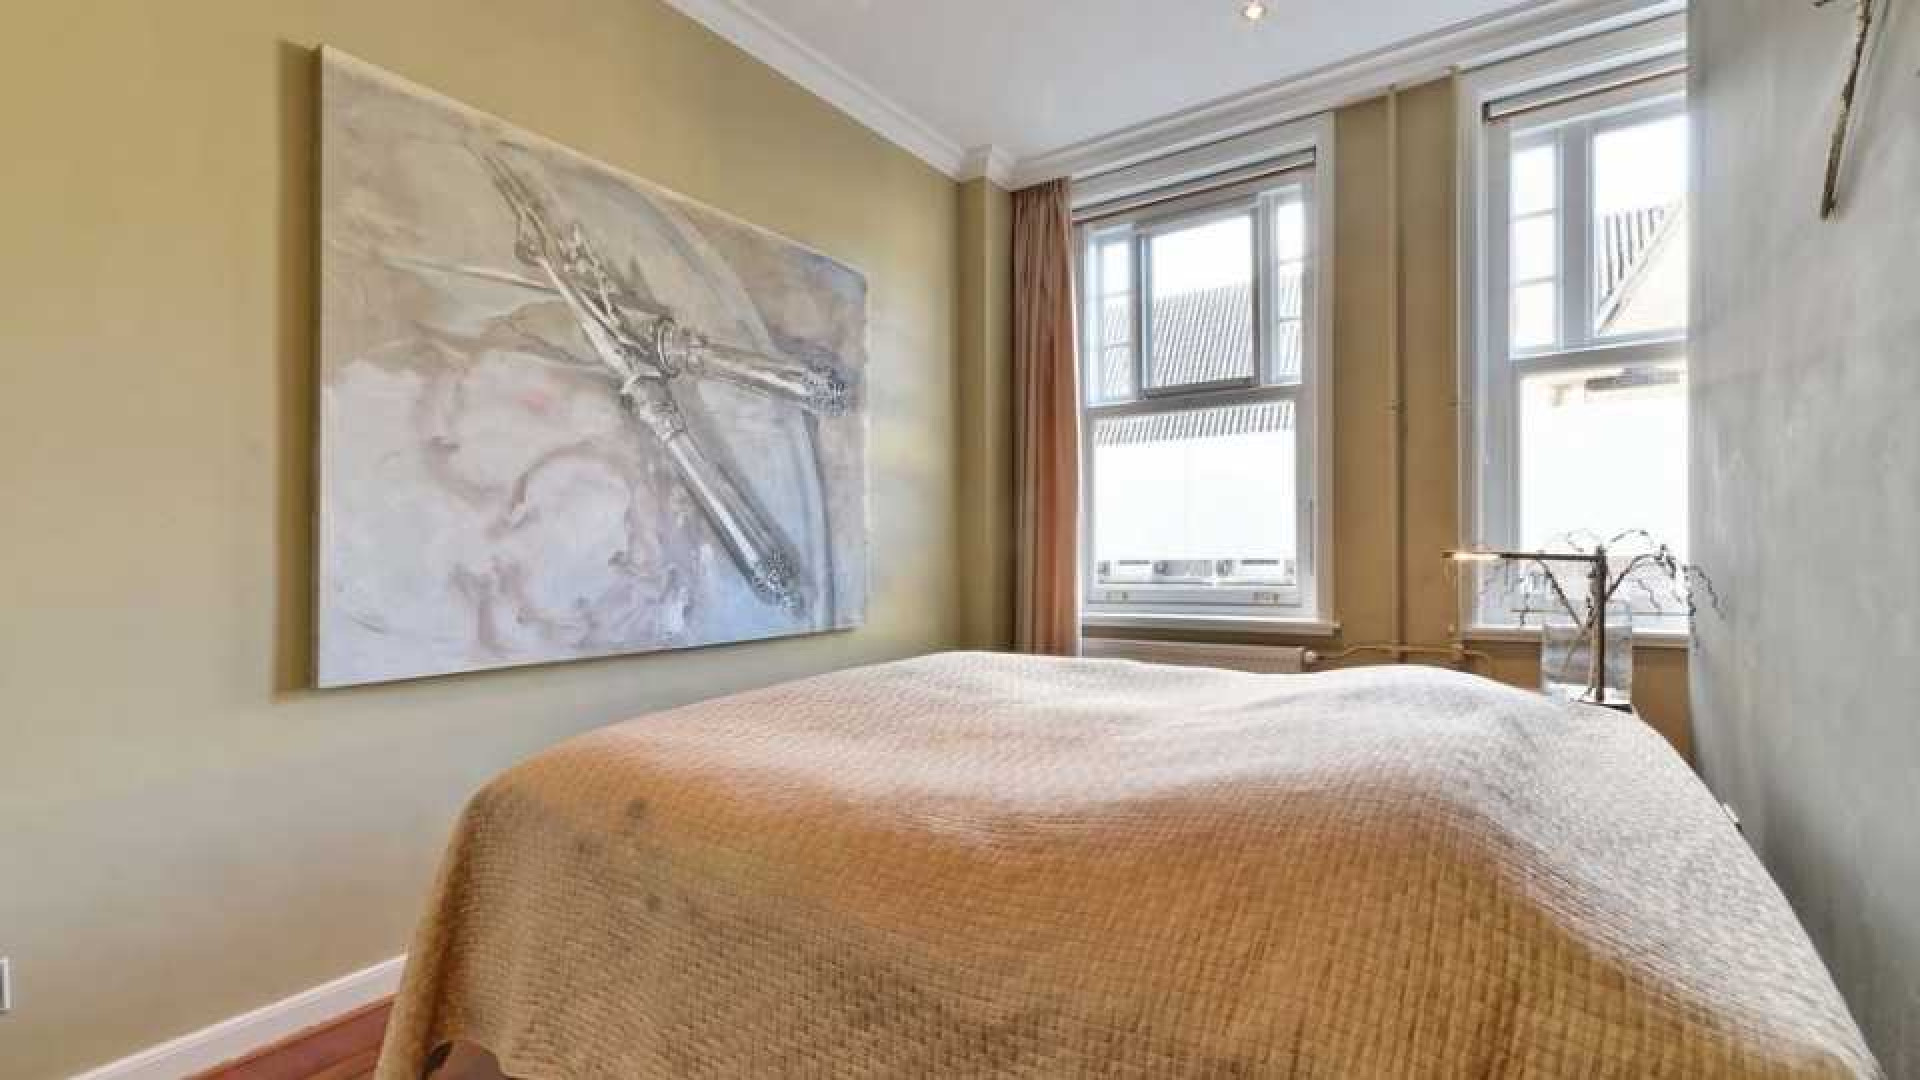 Chazia Mourali koopt met eigen geld luxe appartement in Amsterdam Zuid. Zie foto's